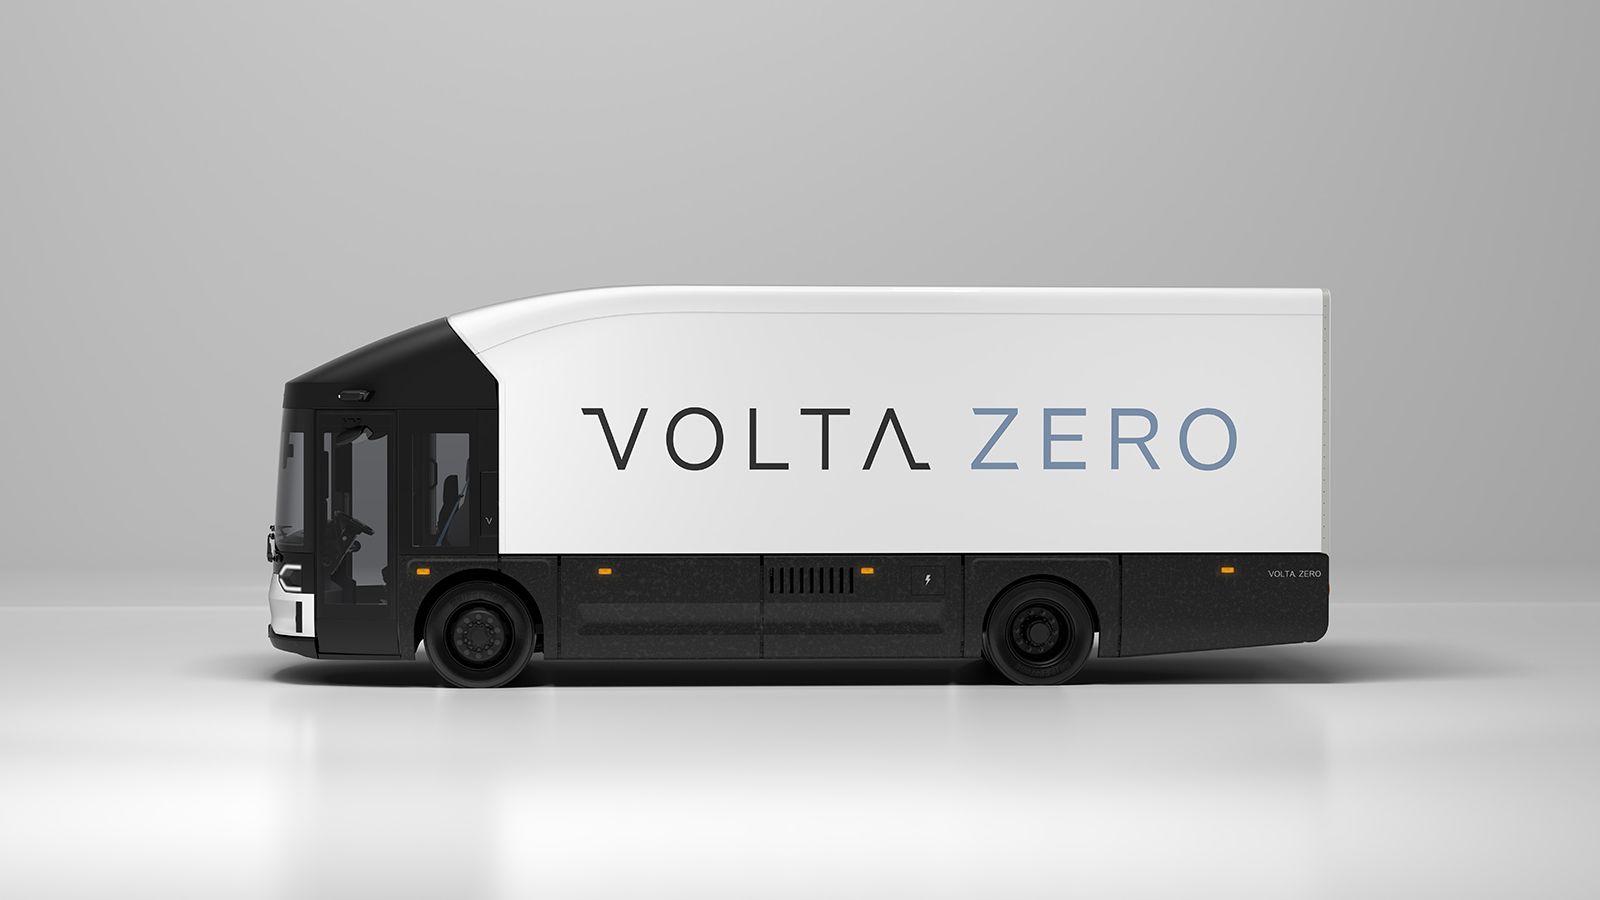 Από το τέλος του 2022, η παραγωγή του Volta Zero θα ξεκινήσει στο Στάγιερ της Αυστρίας, με το ηλεκτρικό φορτηγό, εκτός από την έκδοση των 16 τόνων, να σχεδιάζεται να αποκτήσει και εκδοχές μεικτού βάρο